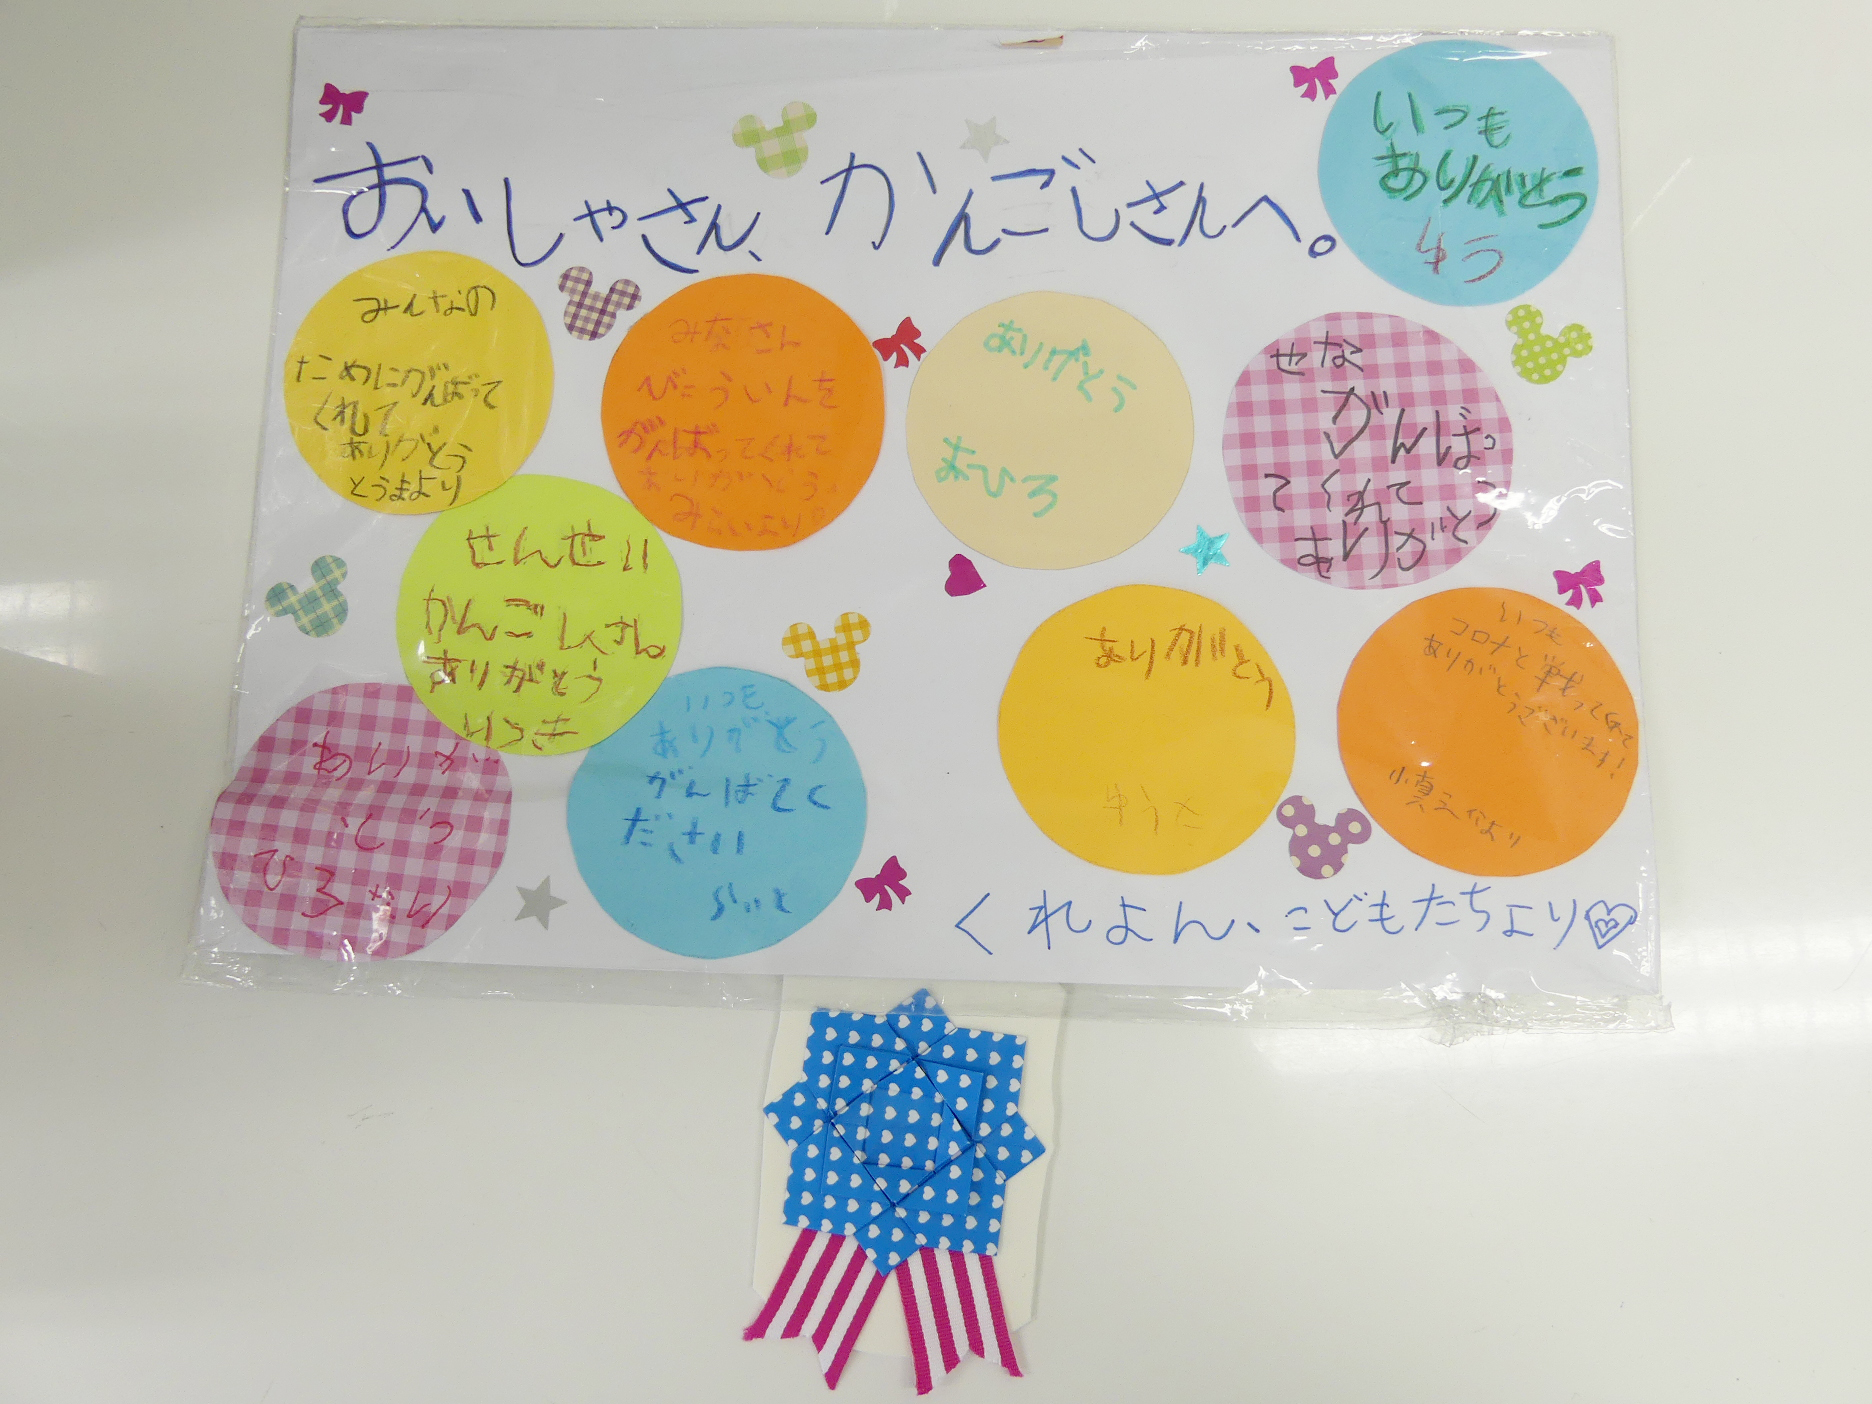 子どもたちからメッセージが届きました 小樽市立病院